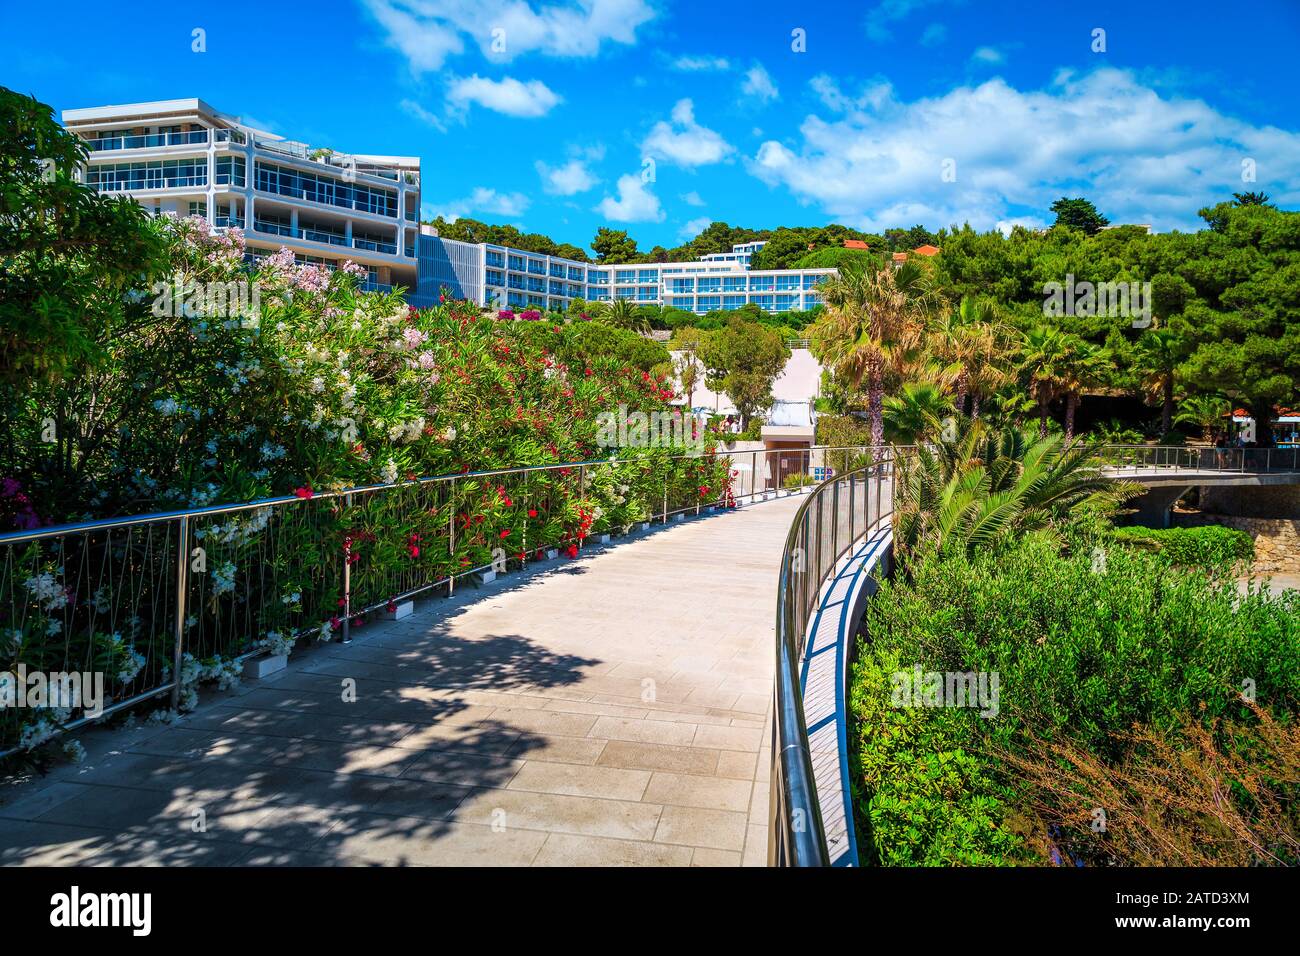 Magnifique complexe de plage avec passerelle fleurie et bâtiments modernes. Beach hôtels et fleurs d'oléander à Hvar, l'île de Hvar, la Dalmatie, la Croatie, l'Europe Banque D'Images